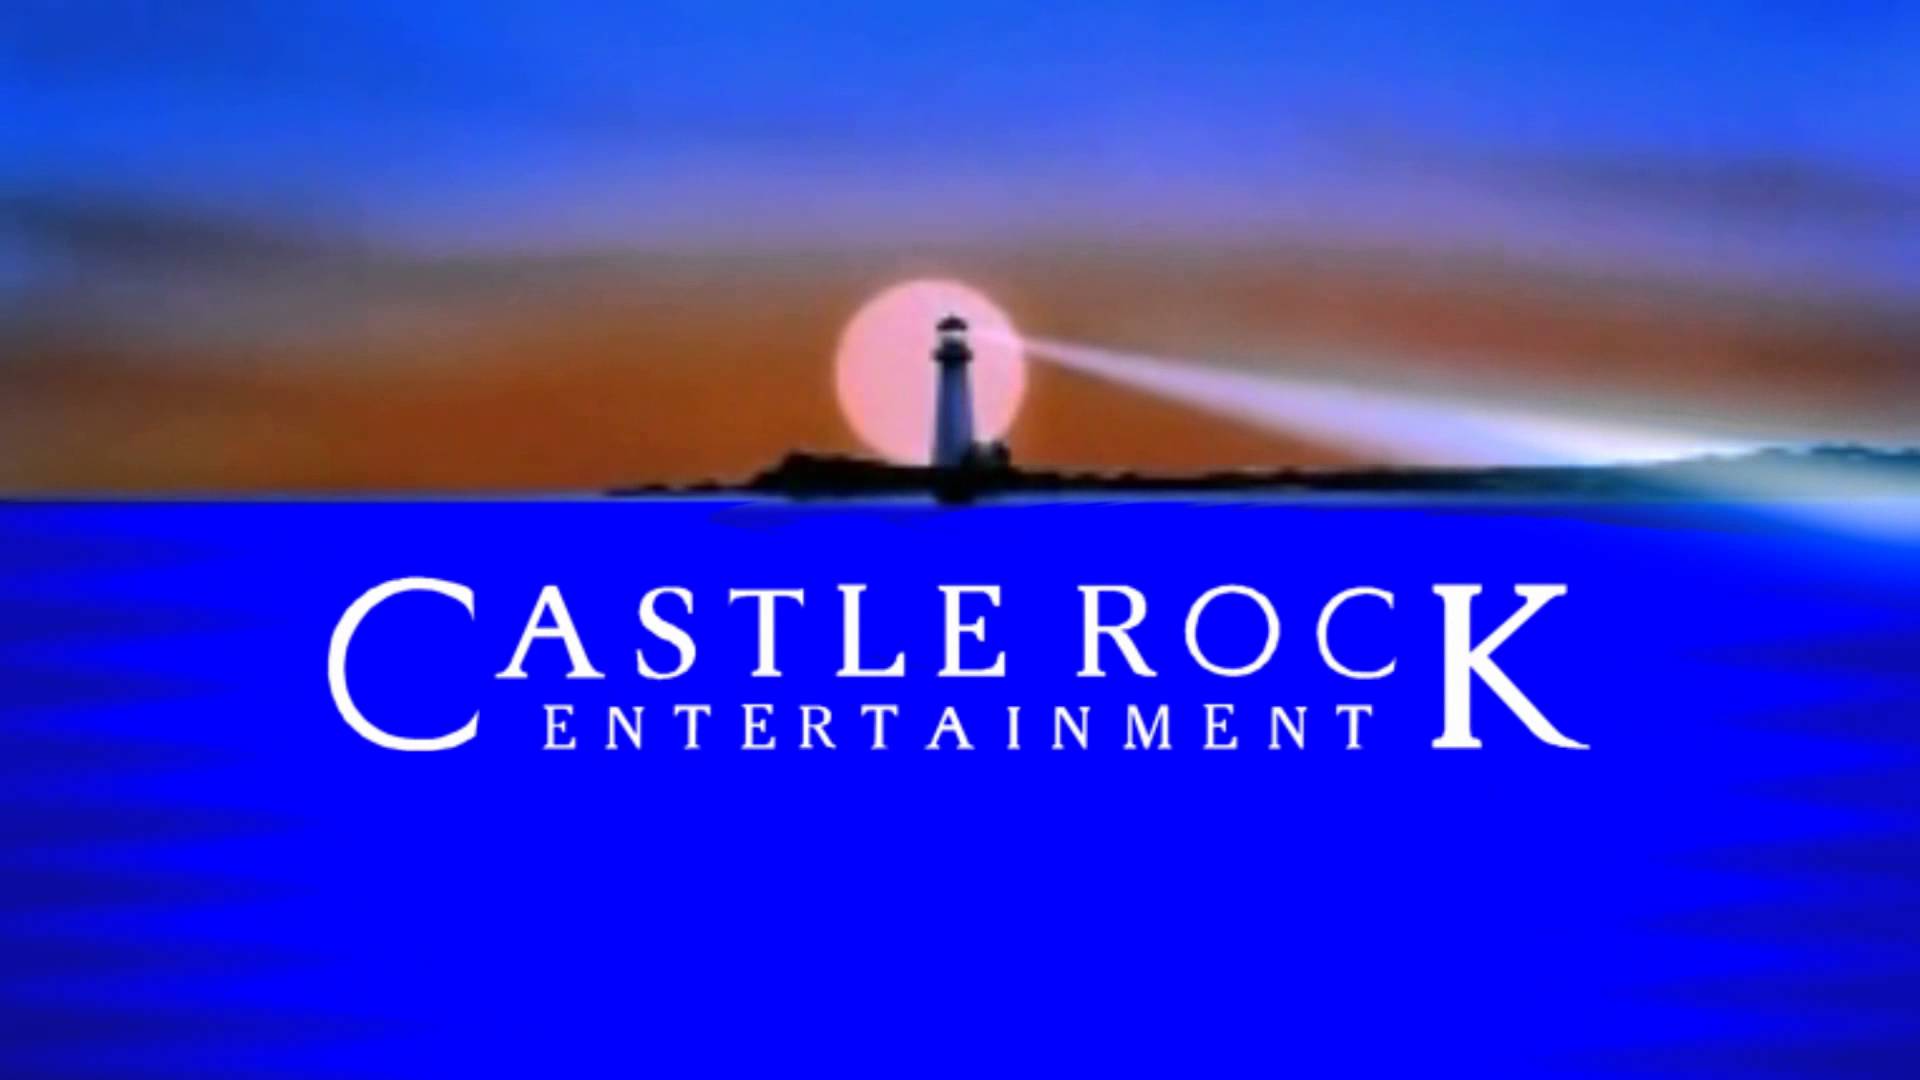 Castle rock entertainment. 